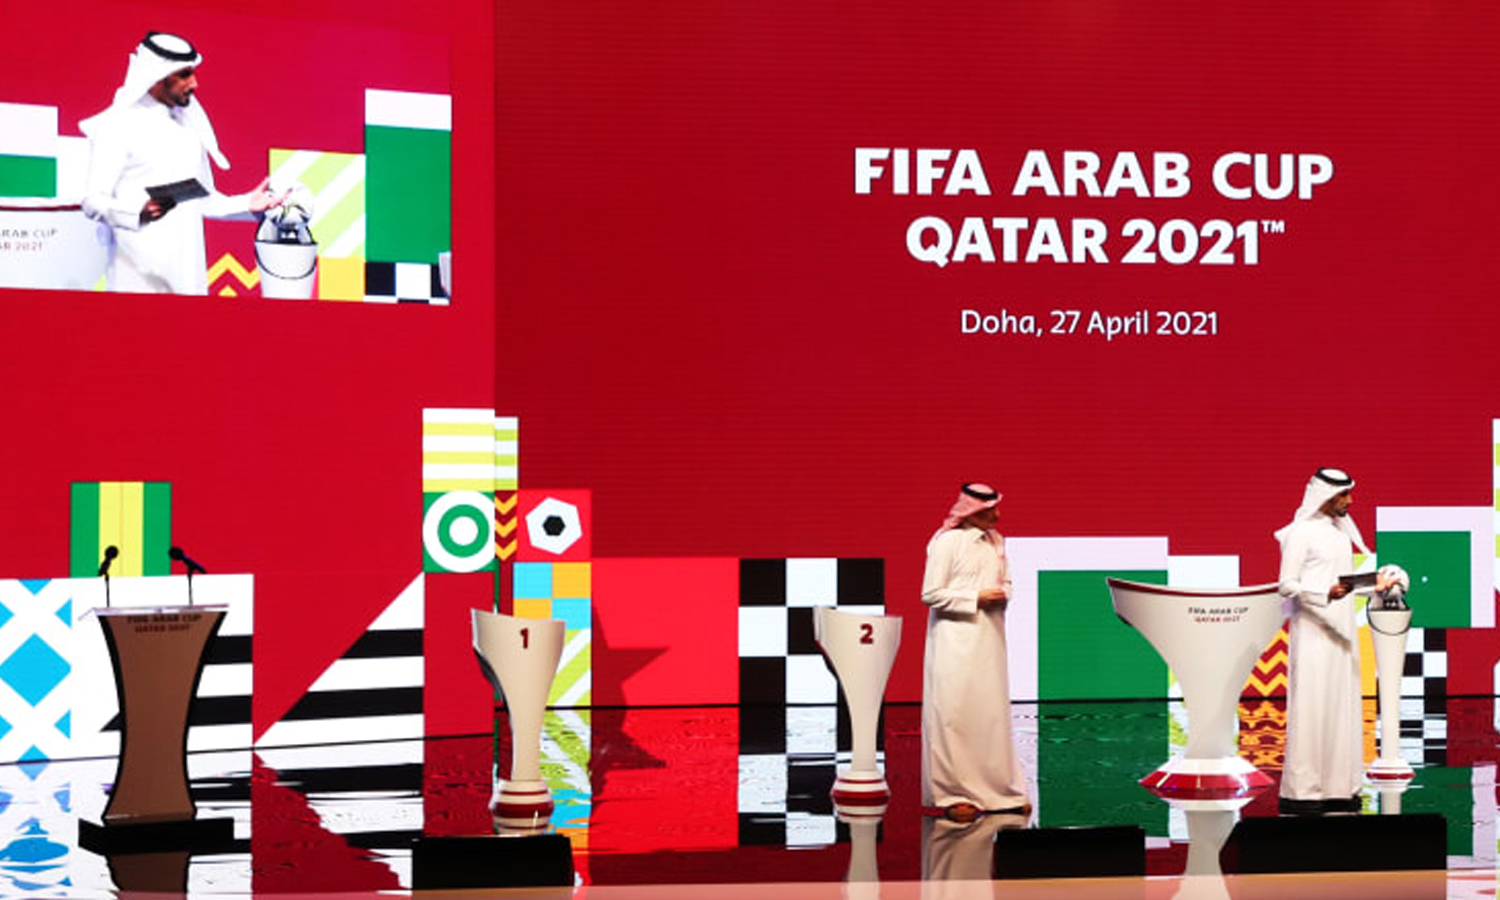 كأس العرب فيفا- قطر 2021 : الشروع في بيع التذاكر قبل انطلاق المقابلات التصفوية